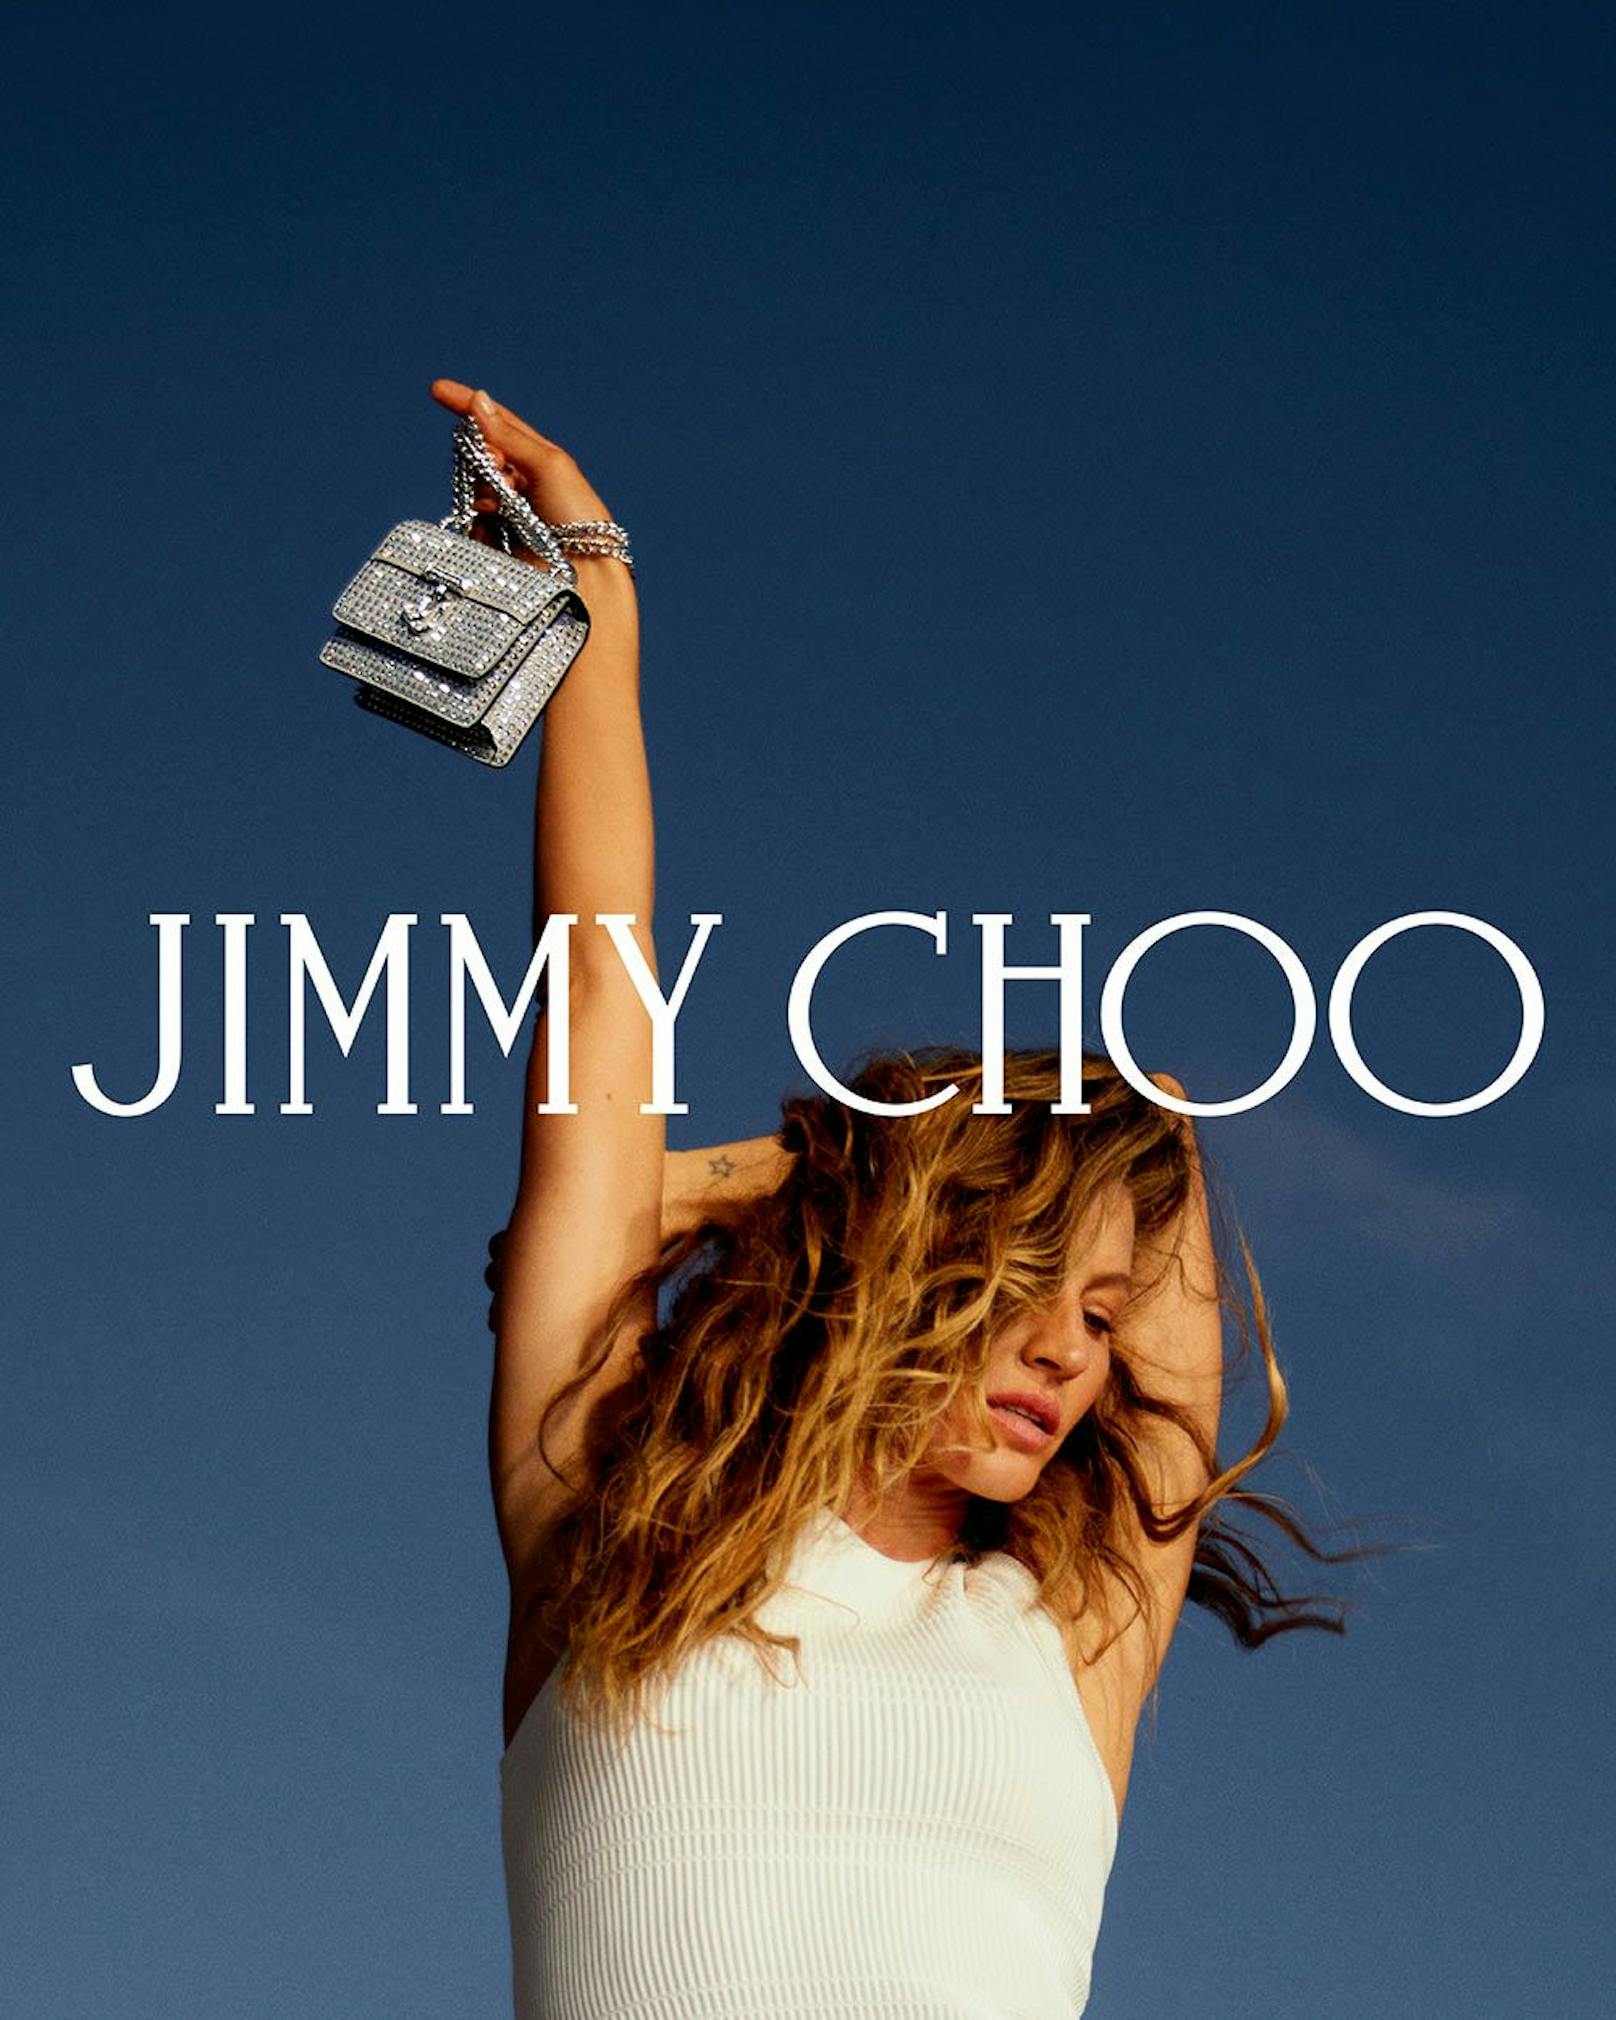 Jimmy Choo hat das Supermodel für seine neuste Sommer-Kampagne engagiert.